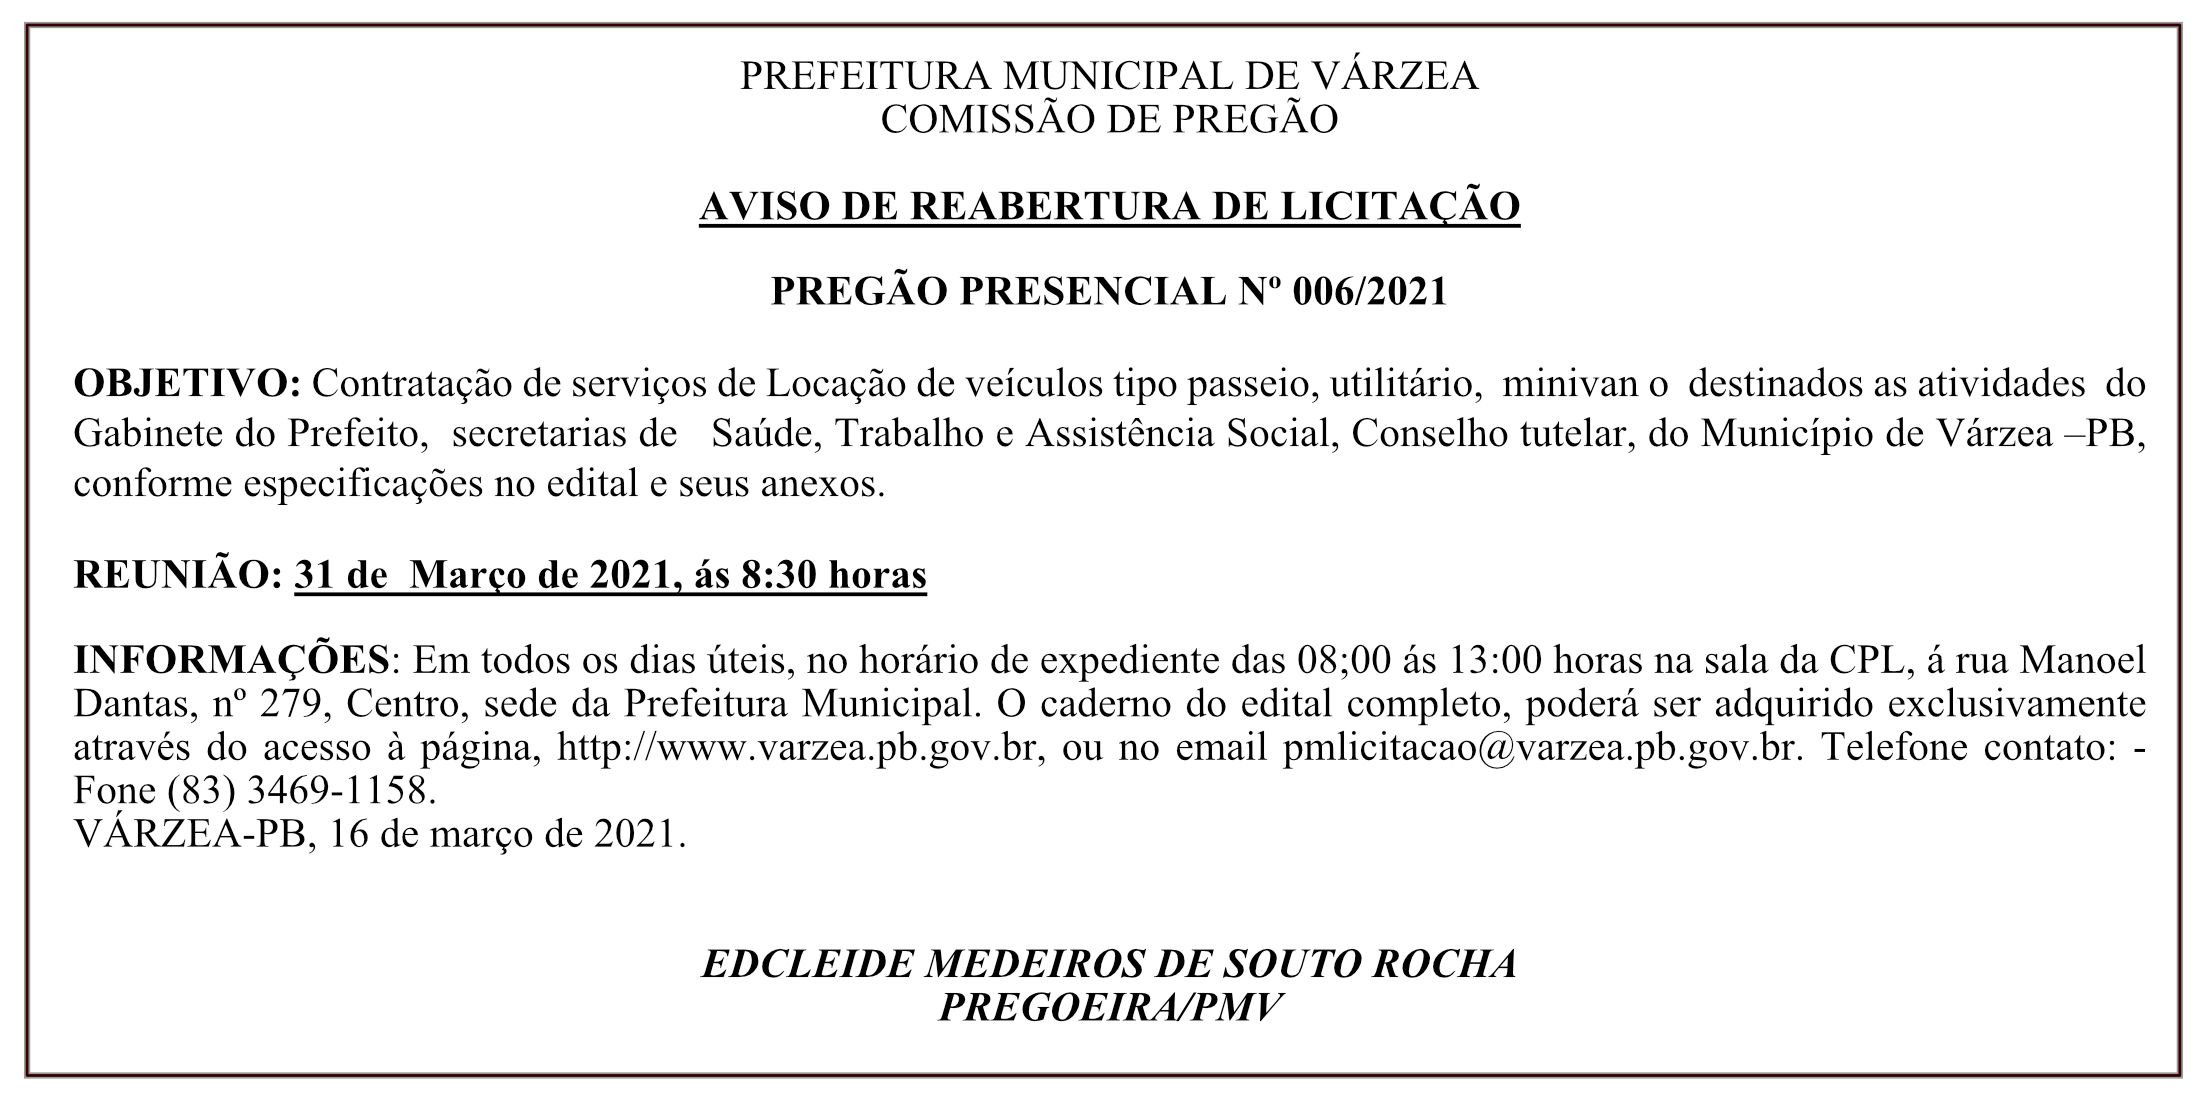 PREFEITURA MUNICIPAL DE VÁRZEA – COMISSÃO DE PREGÃO – AVISO DE REABERTURA DE LICITAÇÃO – PREGÃO PRESENCIAL Nº 006/2021